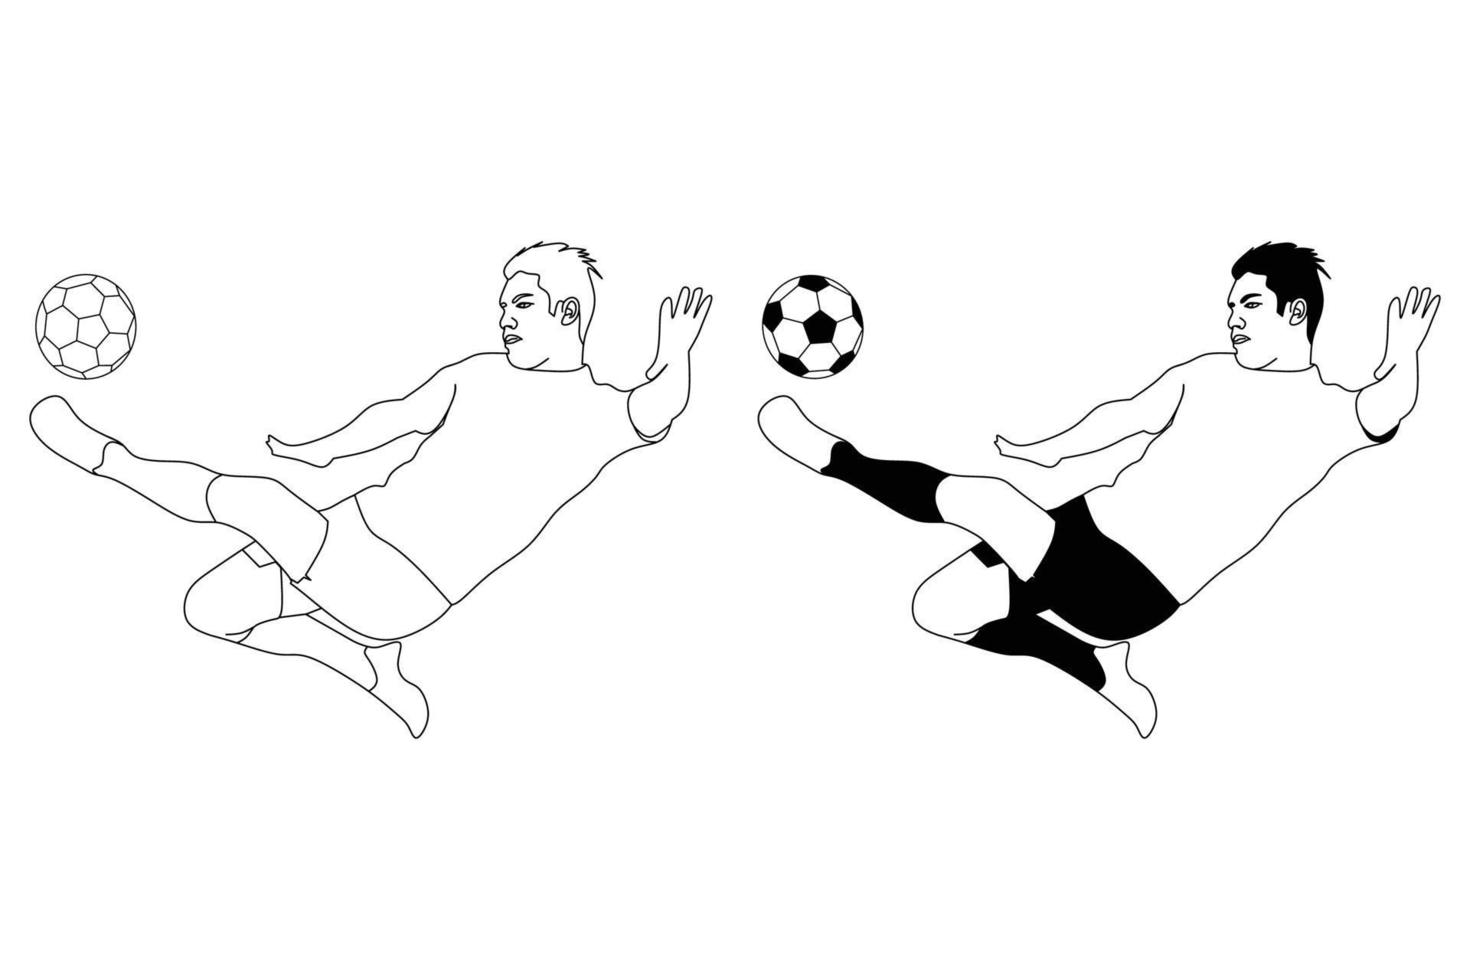 Vektor-Football-Spieler. schwarz-weiße Strichzeichnungen. vektor